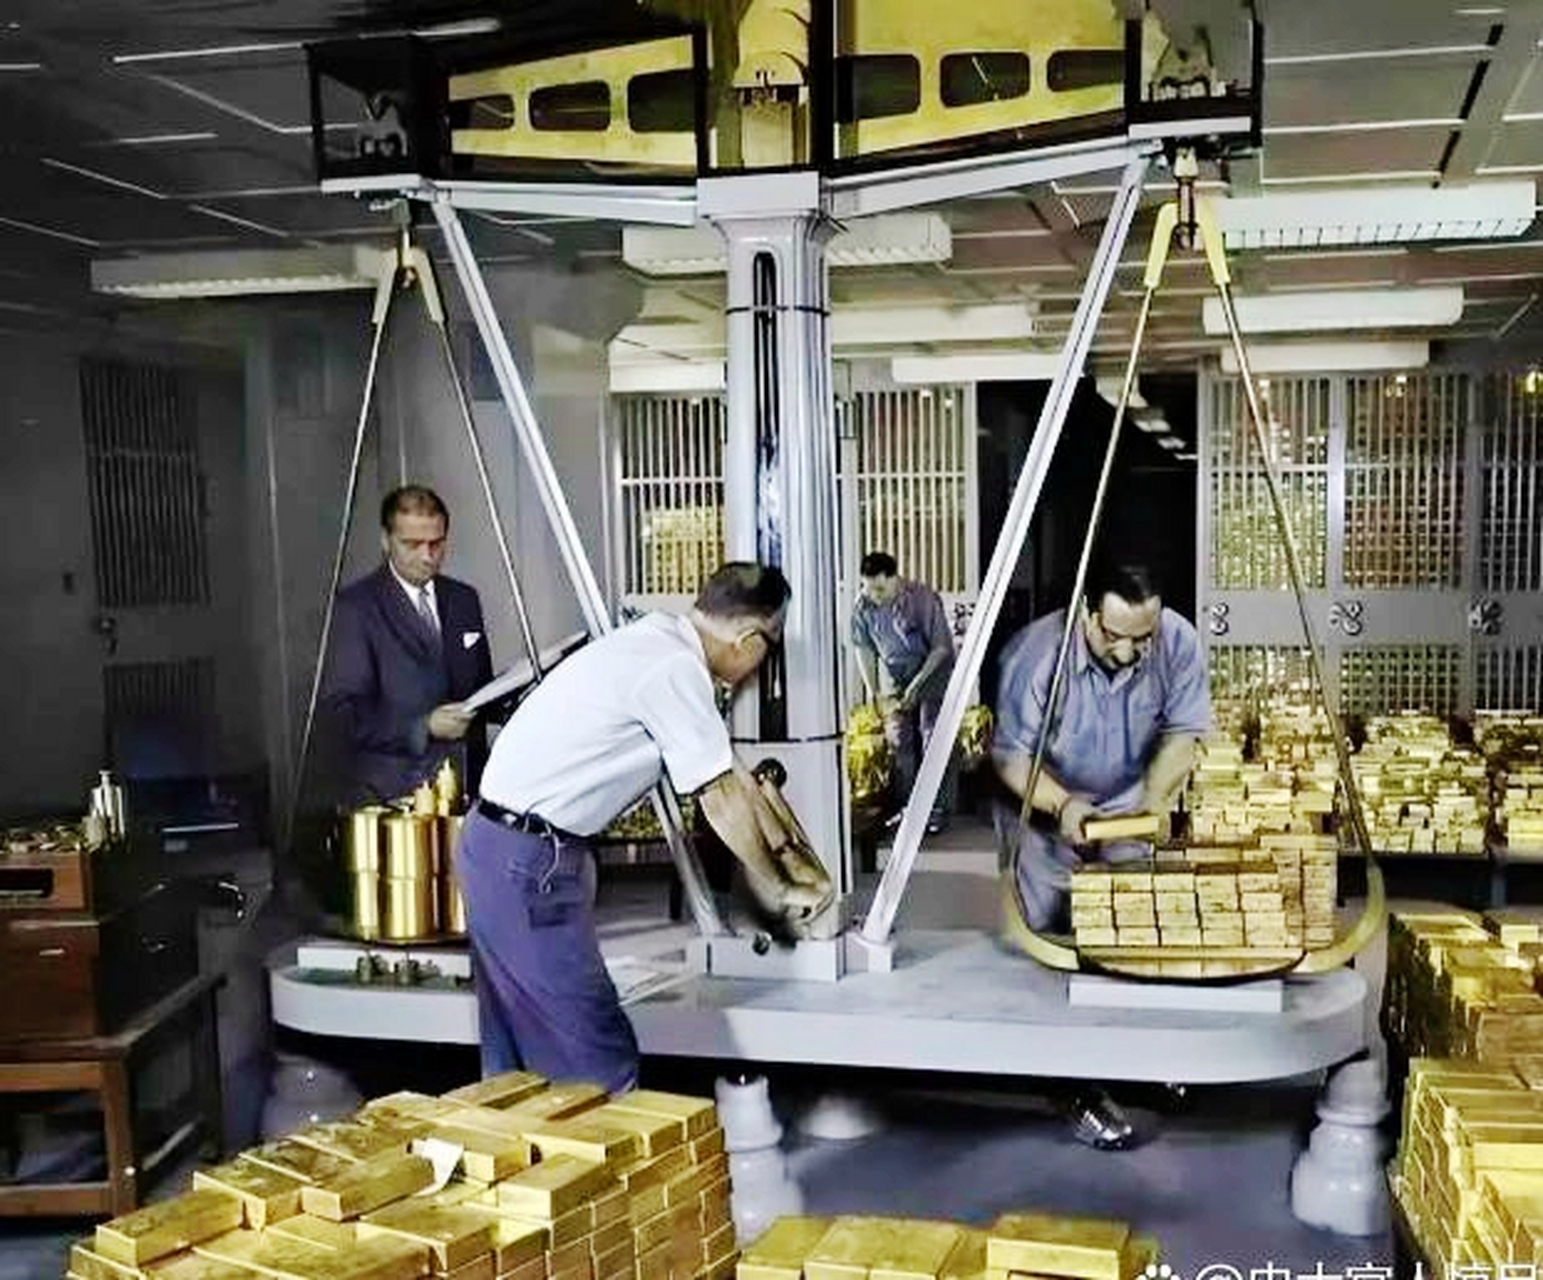 1956年纽约联邦储备银行地下金库照片,里面存放着大量黄金,银行员工